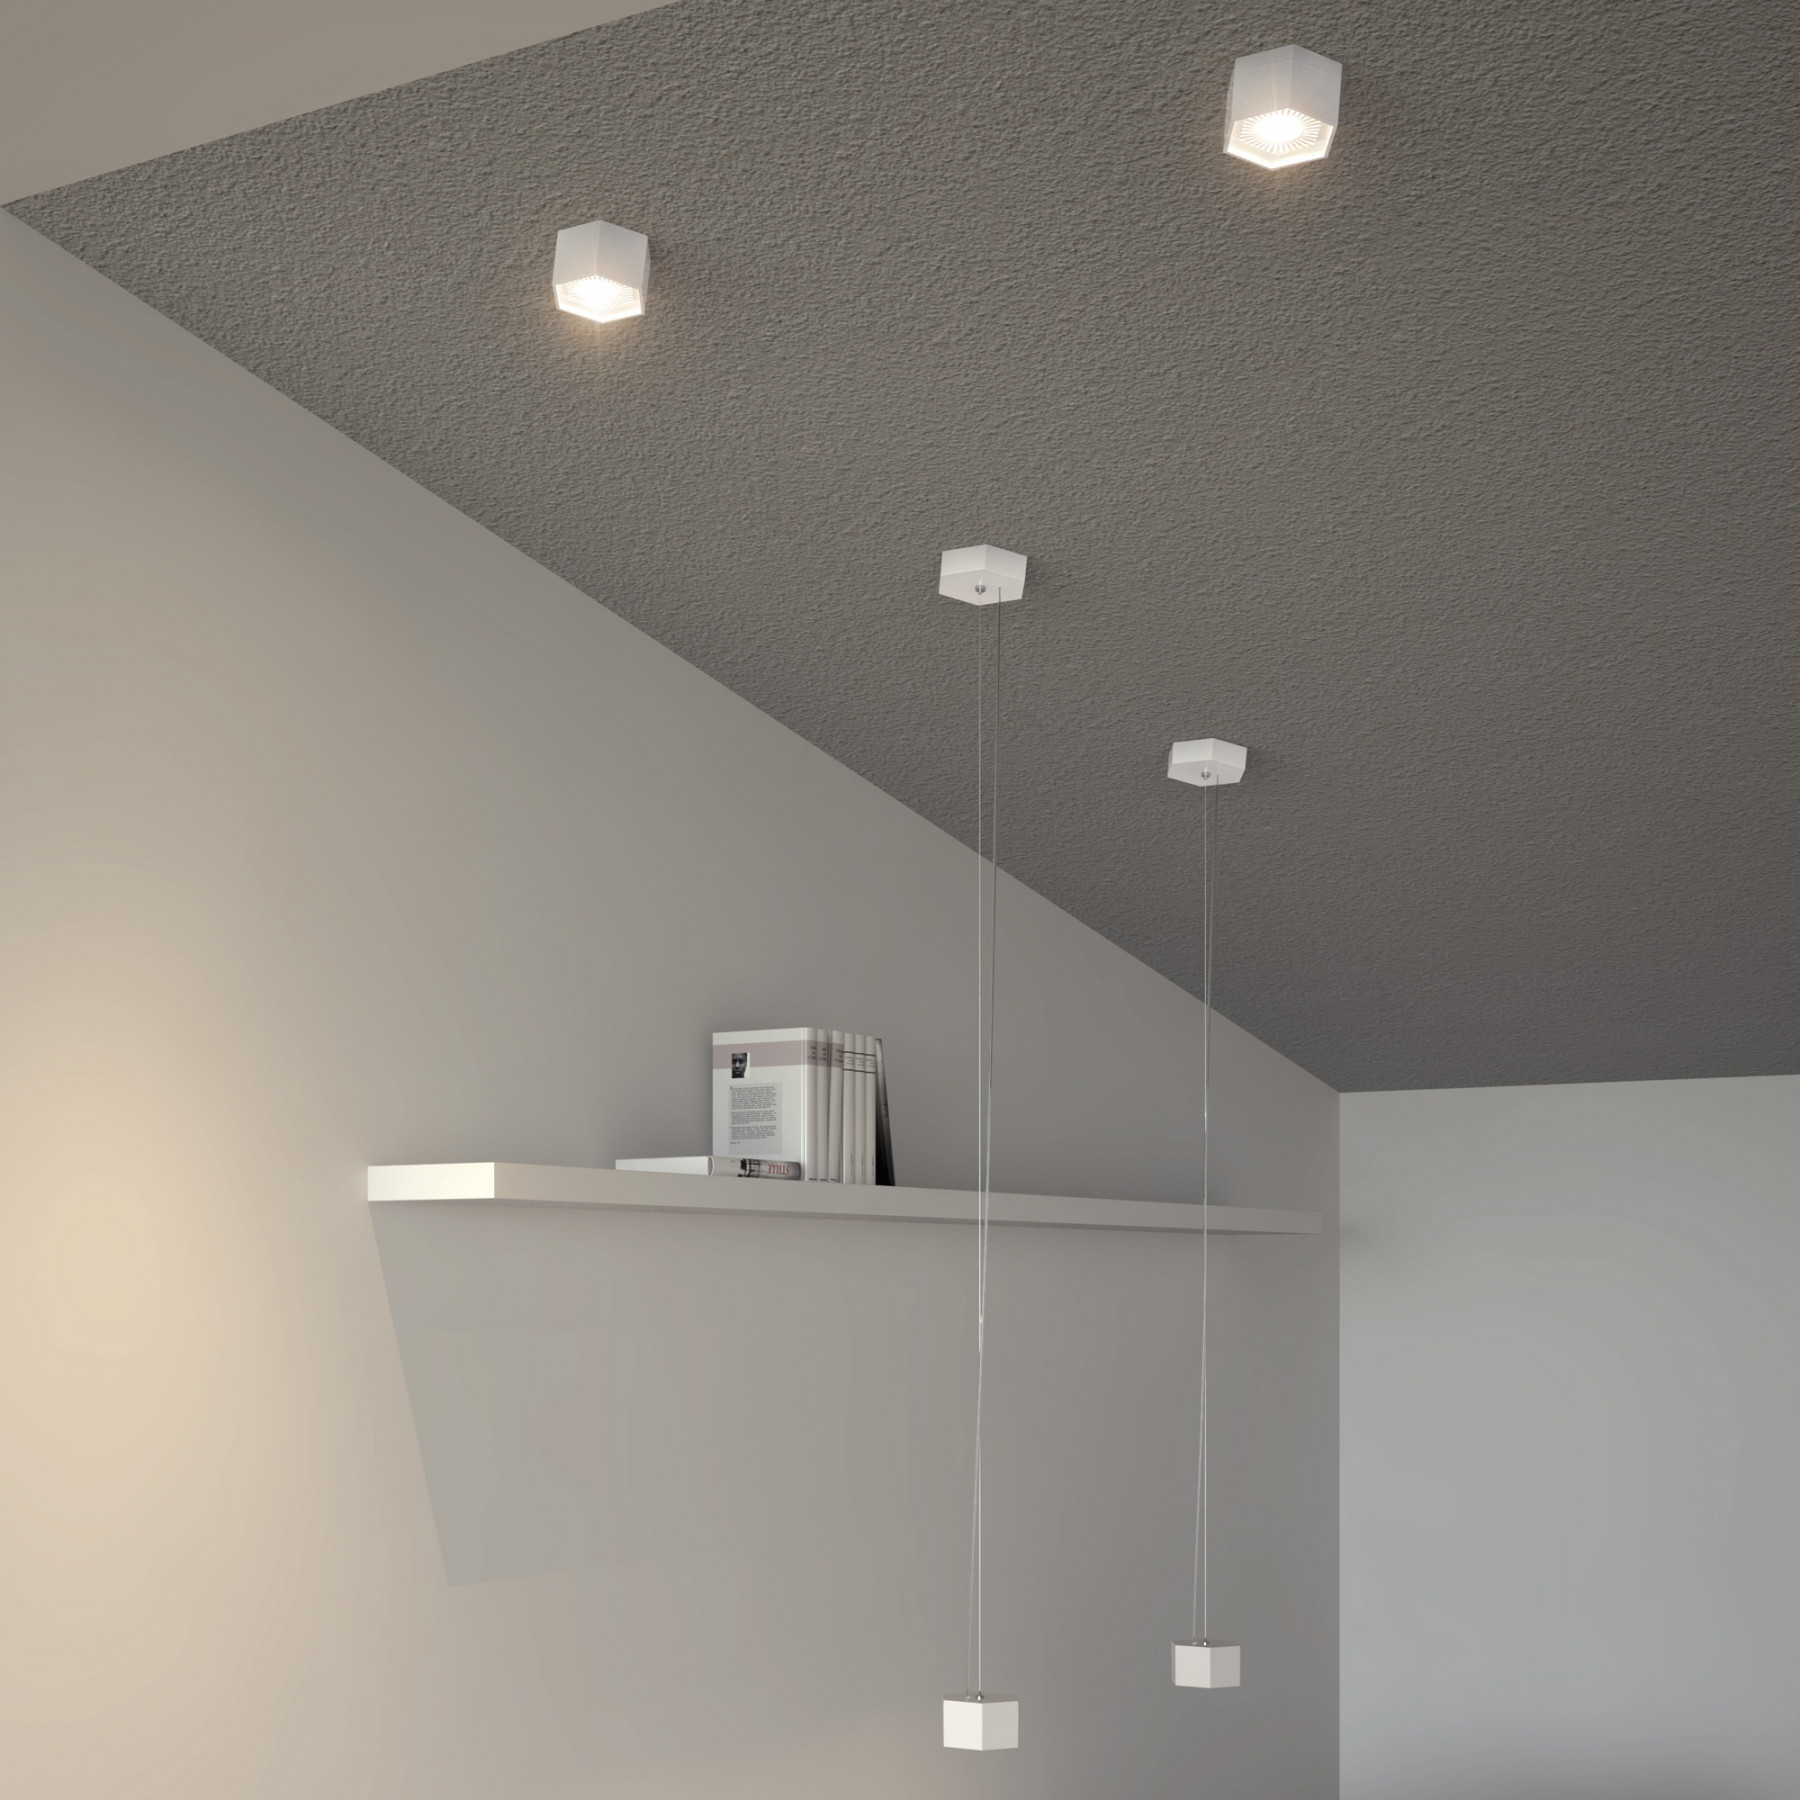 Osram Combilite Ceiling 4008321979155 Led Lamp